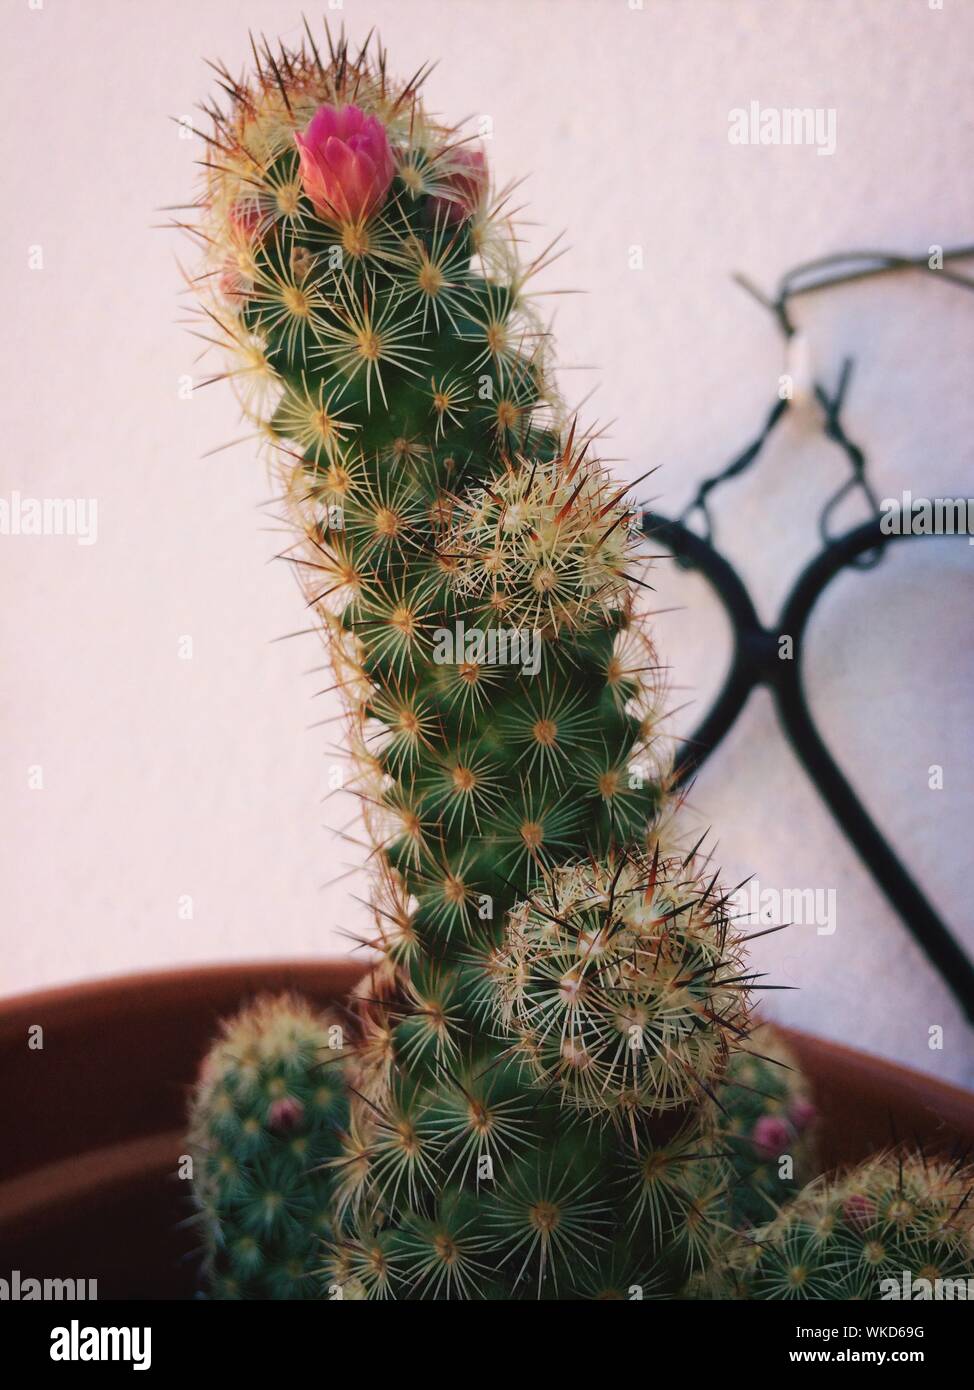 Cactus en maceta como planta ornamental para interiores Foto de stock